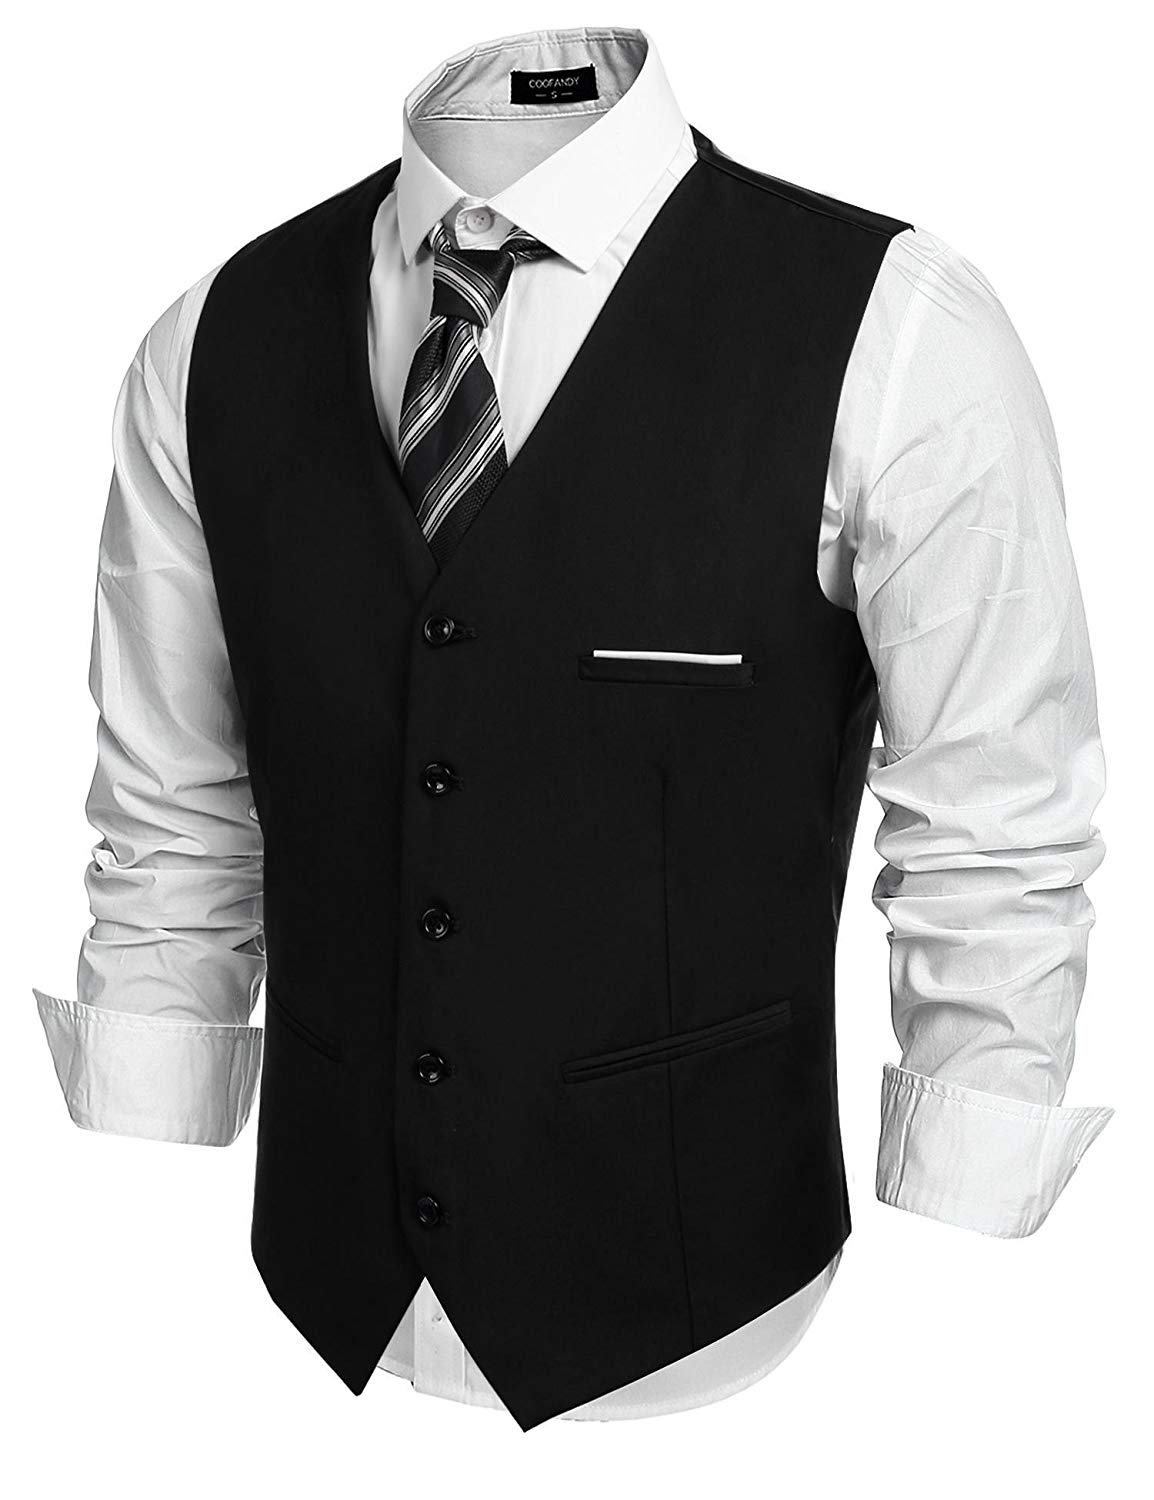 COOFANDY Men's Fashion Formal Slim Fit Business Dress Suit Vest Waistcoat